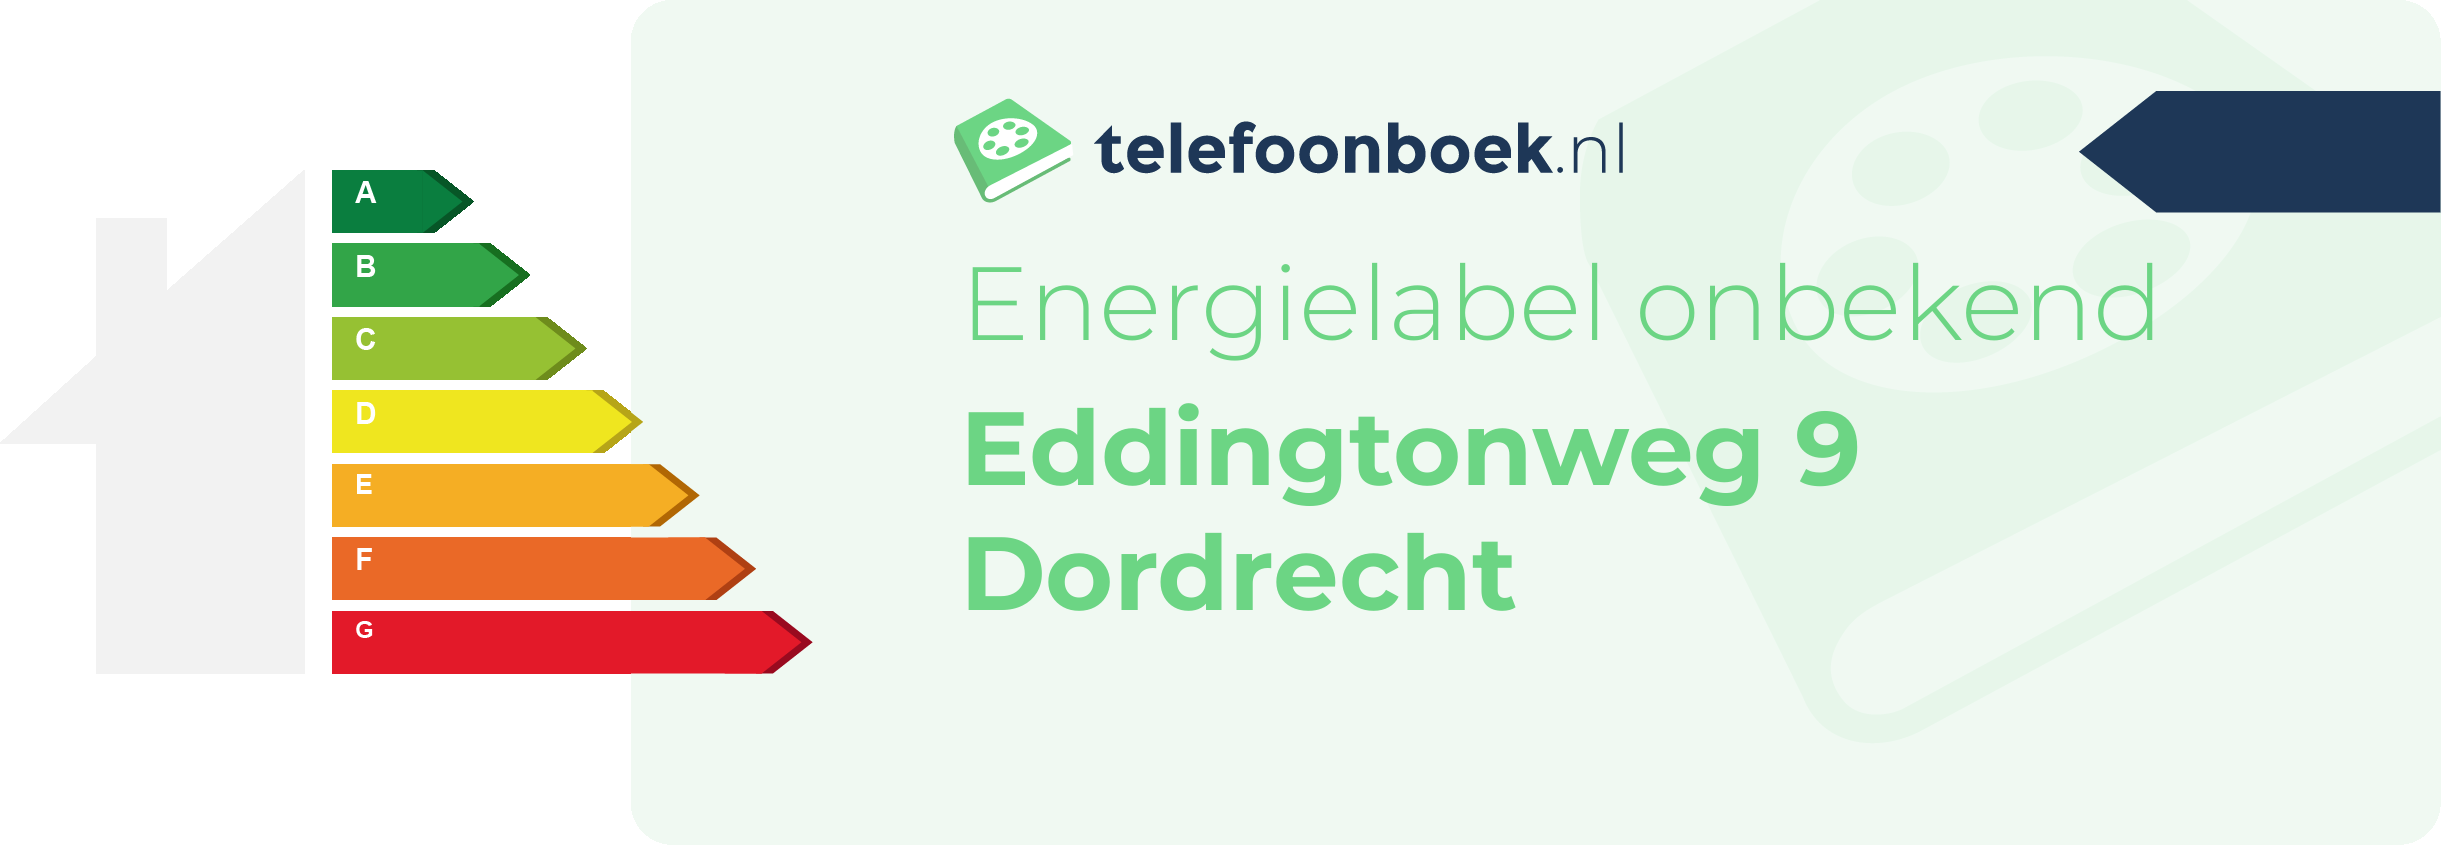 Energielabel Eddingtonweg 9 Dordrecht